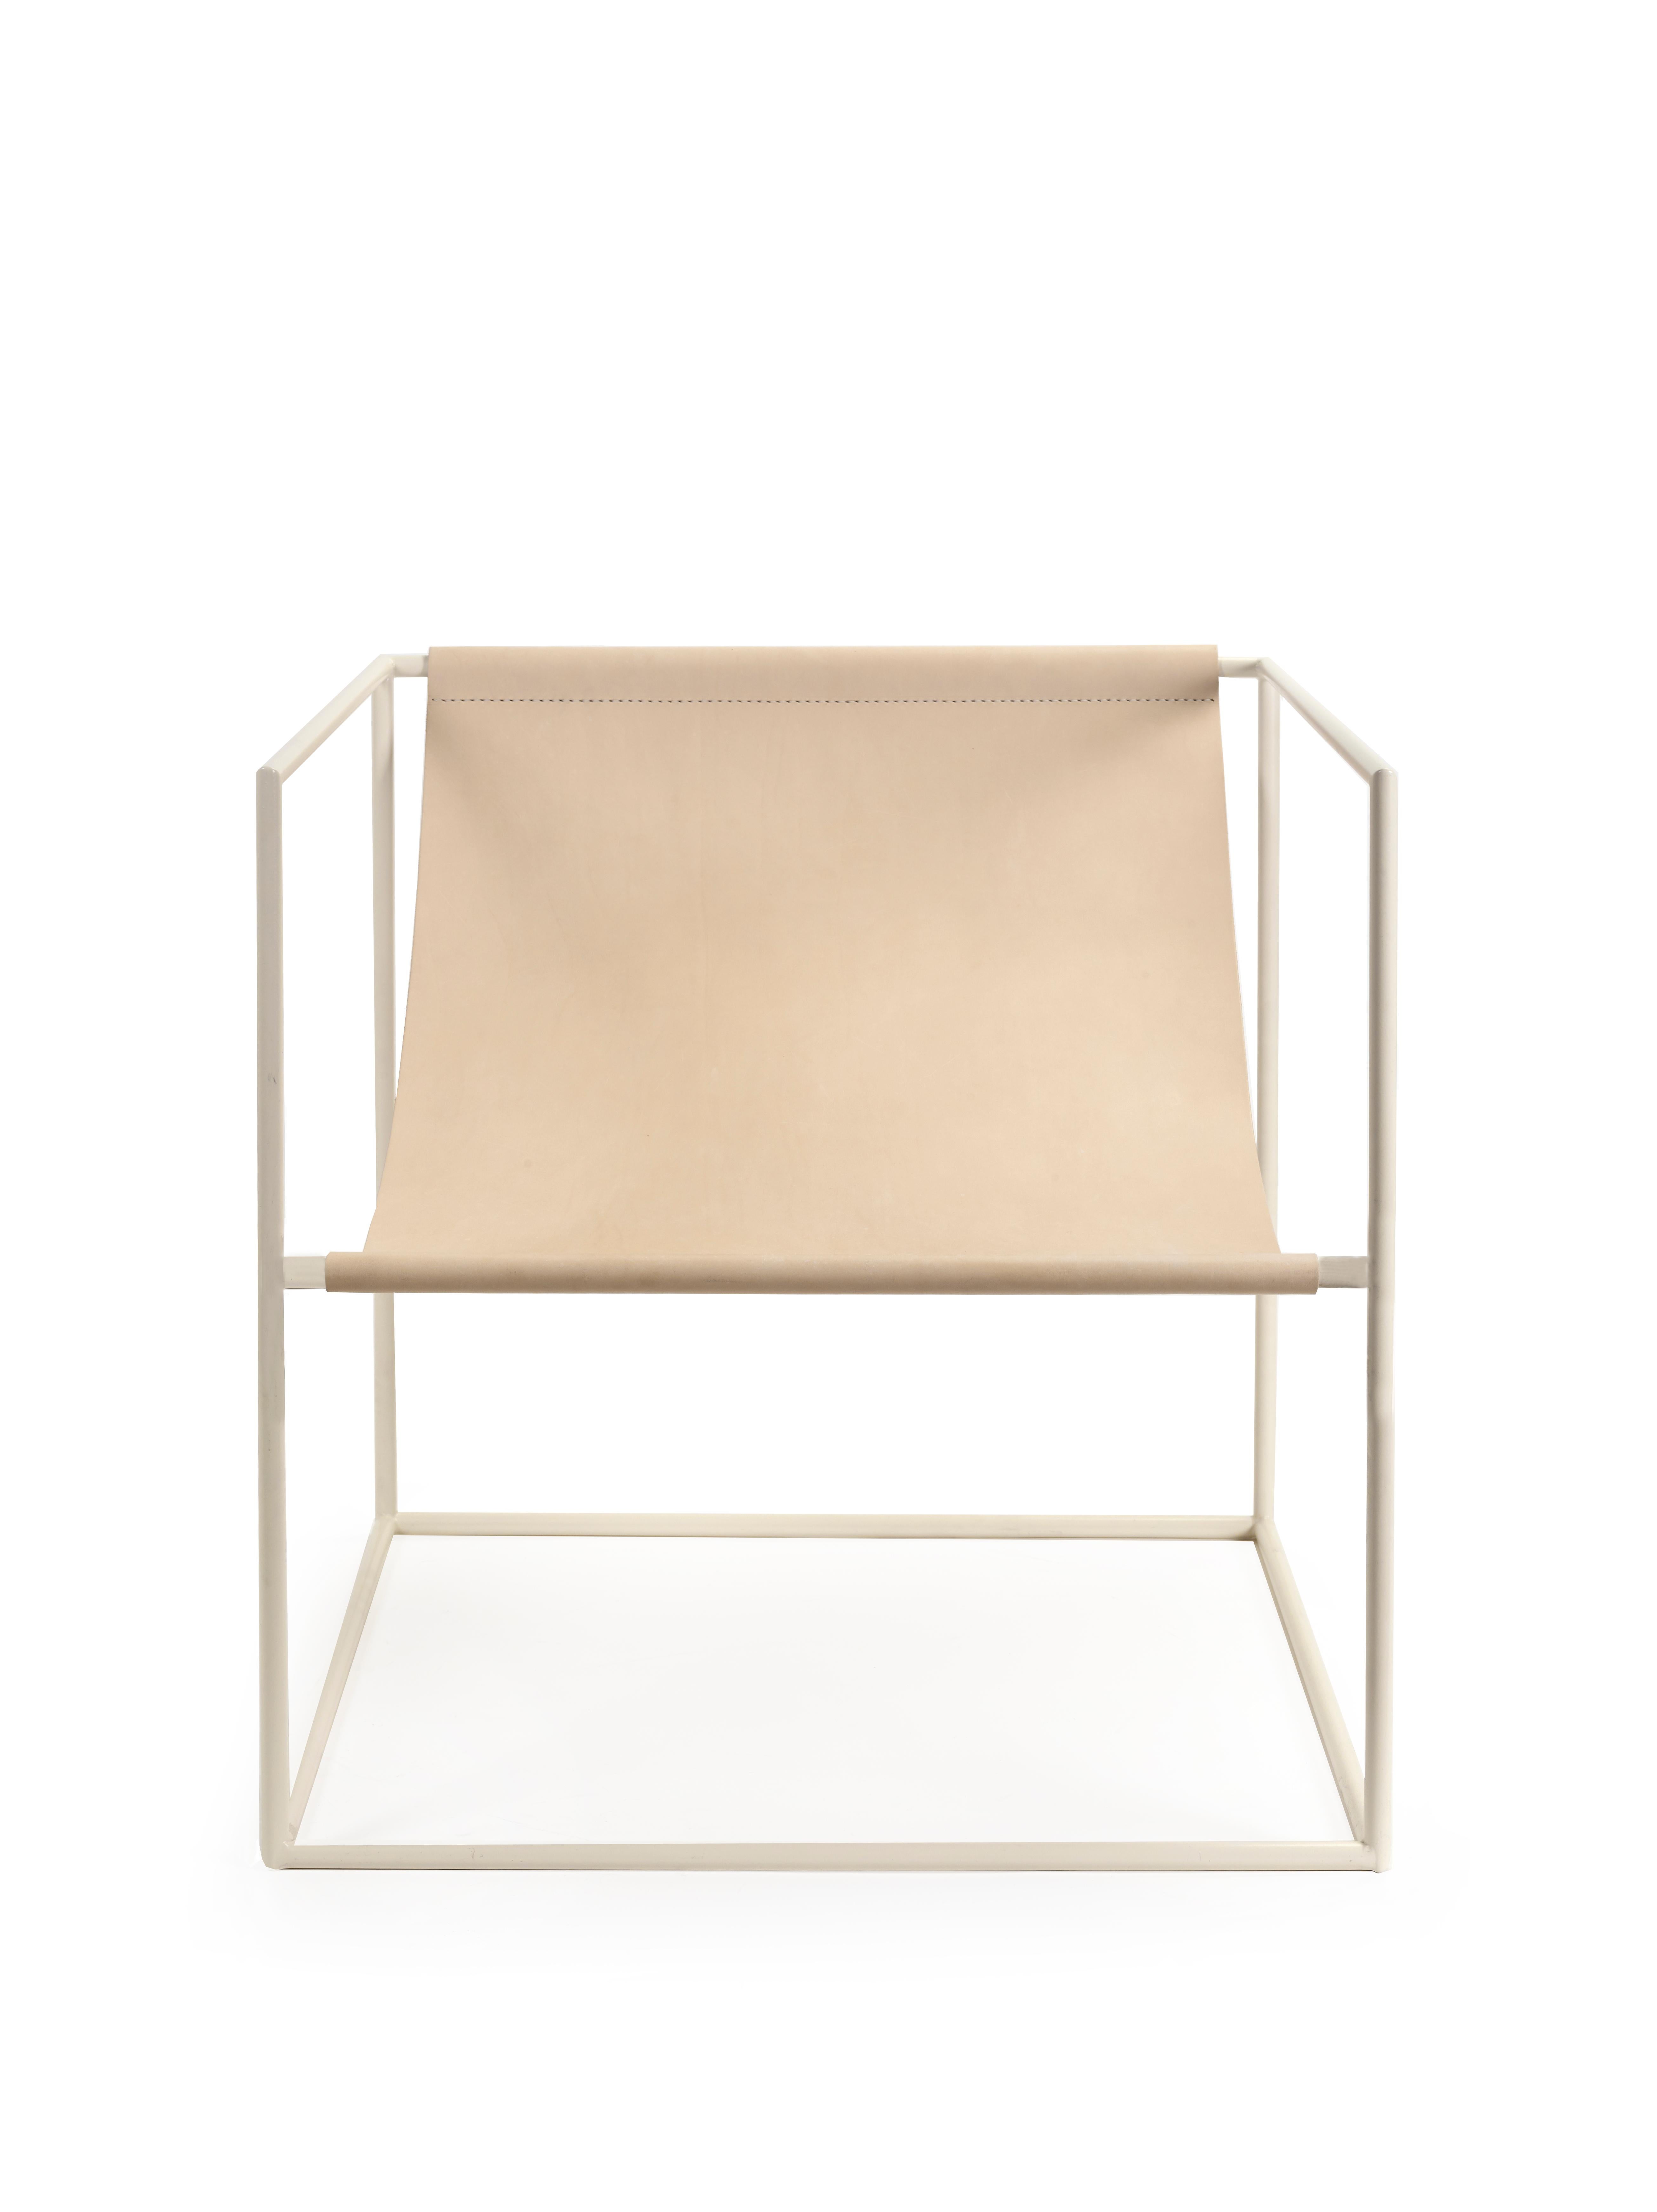 Solo Seat Sièges contemporains
par Muller Van severen

Modèle : blanc - châssis + cuir - siège (V9018022)
Dimensions : H. 61 cm x 62 cm x 62 cm (SH 34 cm) : H. 61 cm x 62 cm x 62 cm (SH 34 cm)

Contrairement à un canapé massif qui englobe une partie